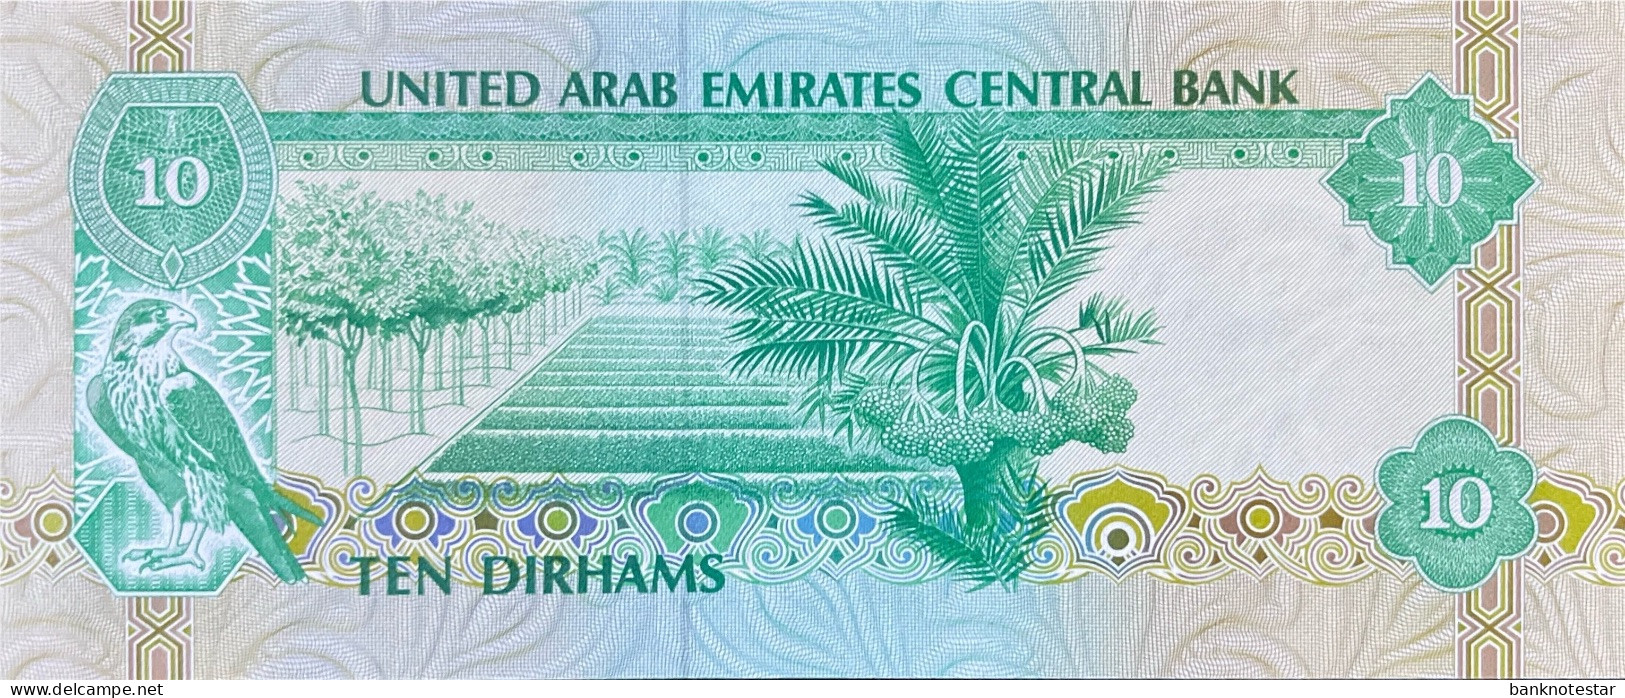 United Arab Emirates 10 Dirhams, P-8 (1982) - UNC - Emiratos Arabes Unidos